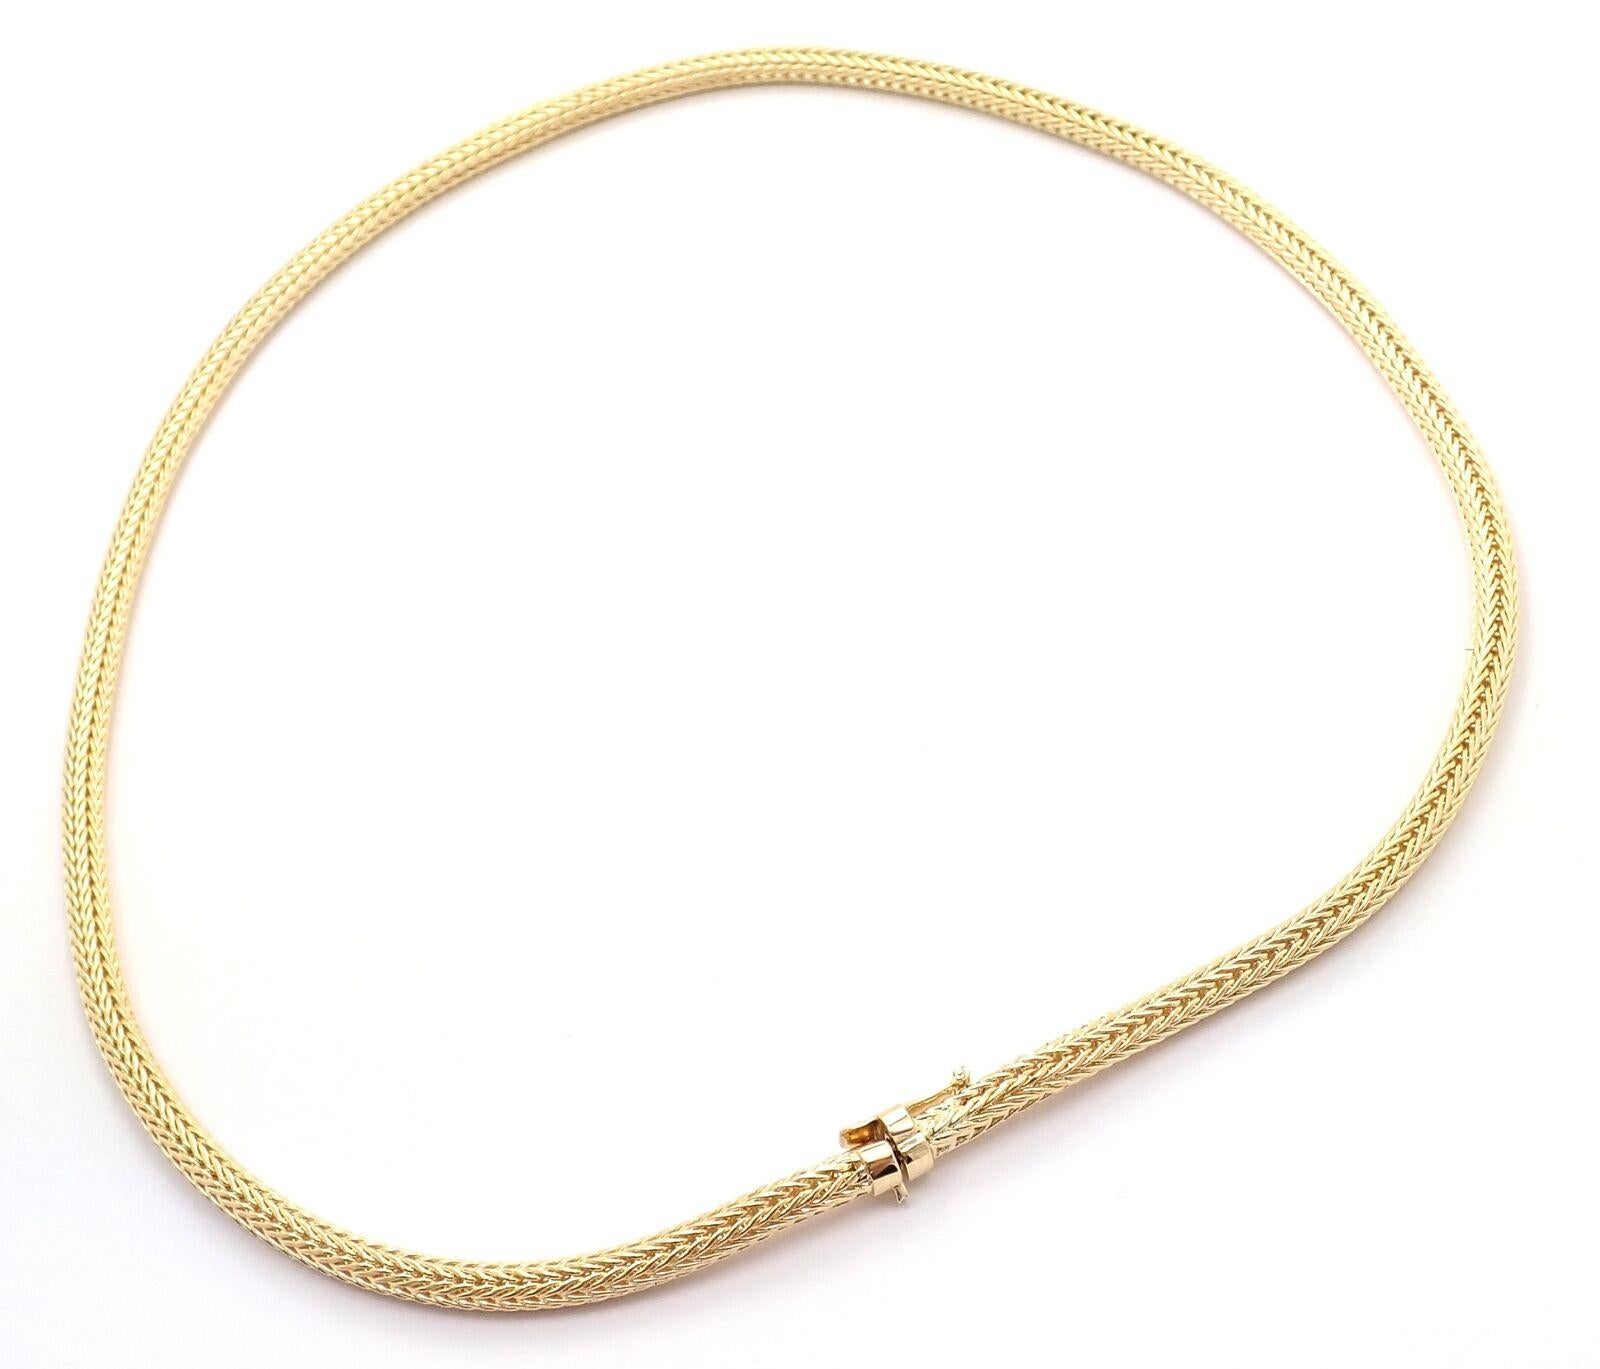 collier vintage en or jaune 18 carats avec chaîne en queue de renard de Tiffany Co.
Détails : 
Longueur : 17.25